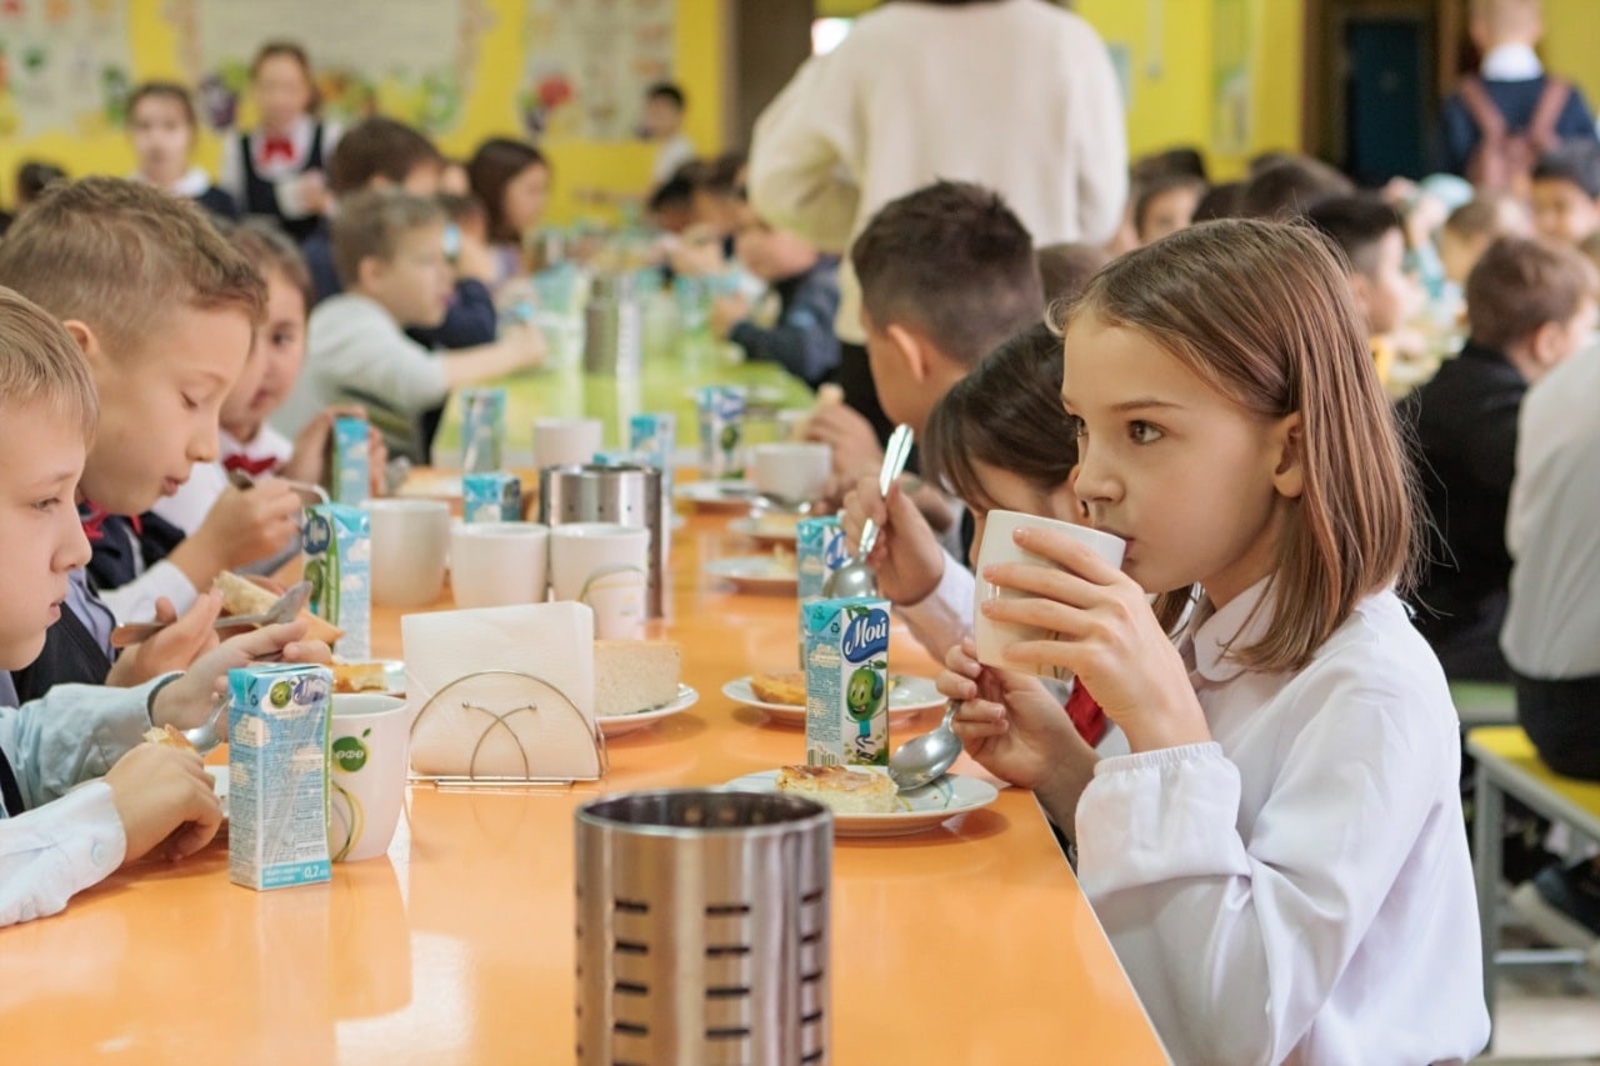 В Башкирии три года совершенствуют систему школьного питания. Что сделано?